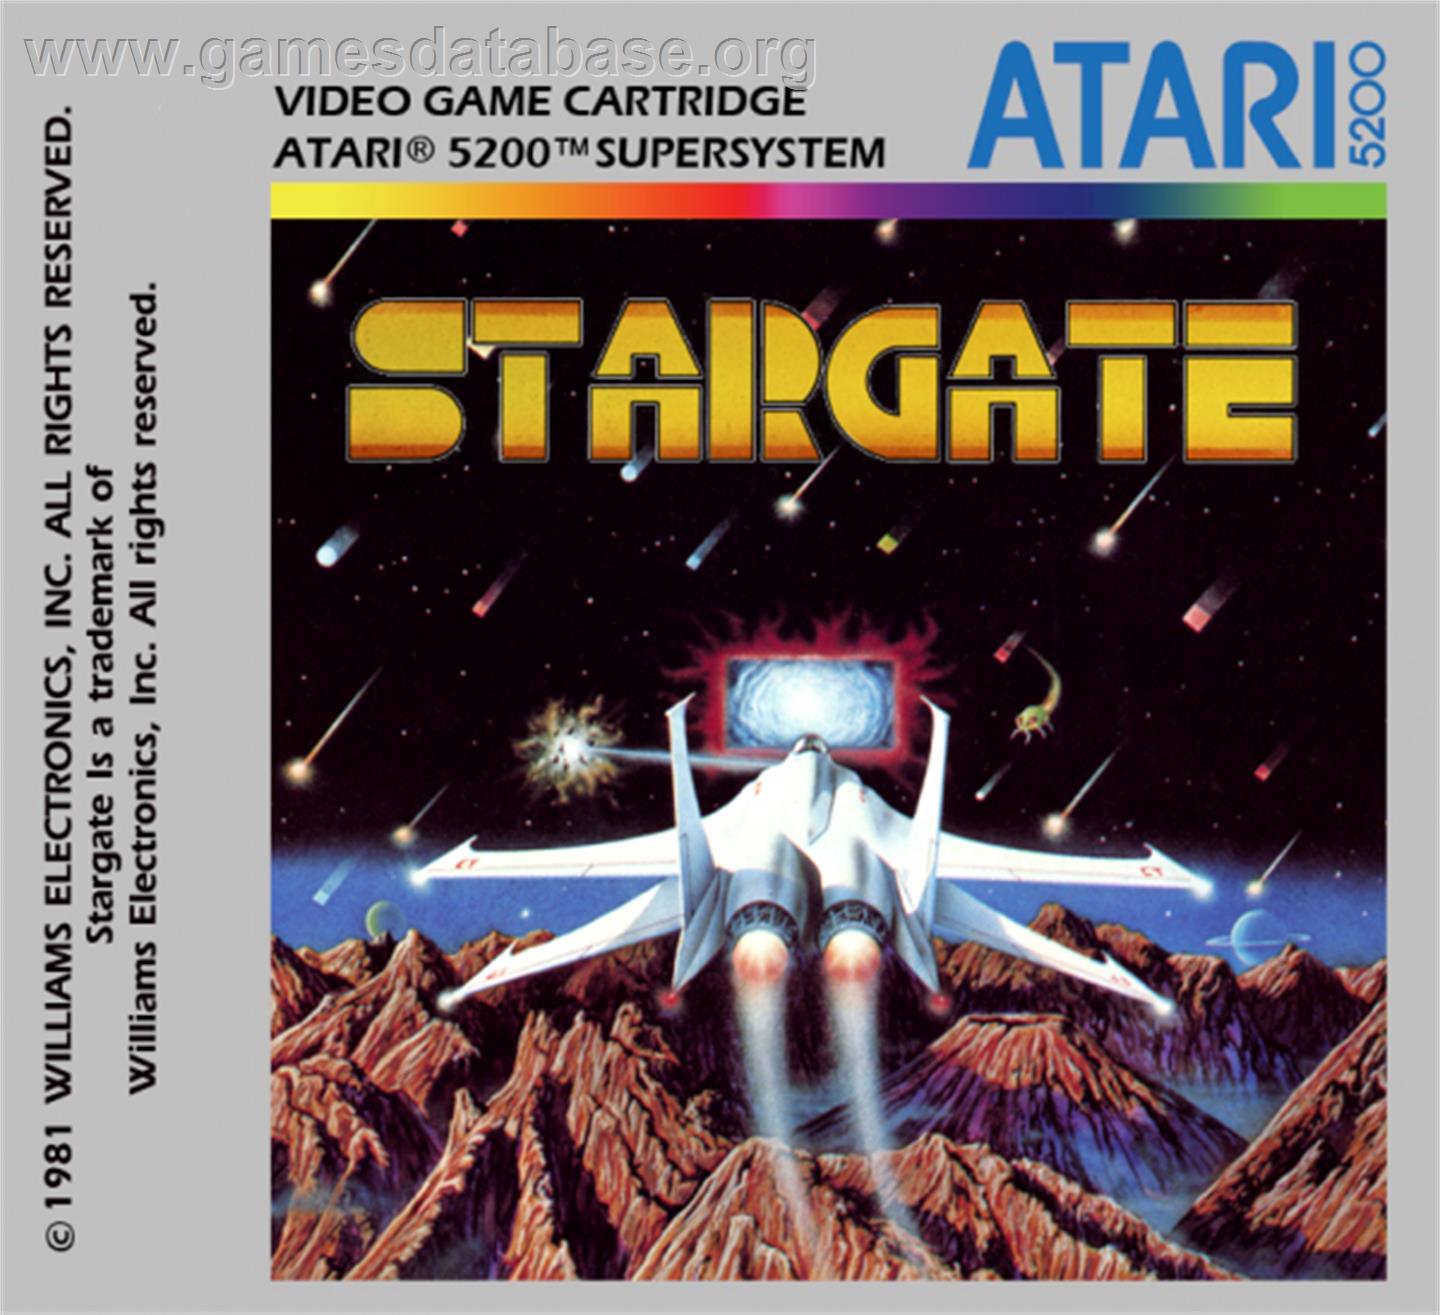 Stargate - Atari 5200 - Artwork - Cartridge Top